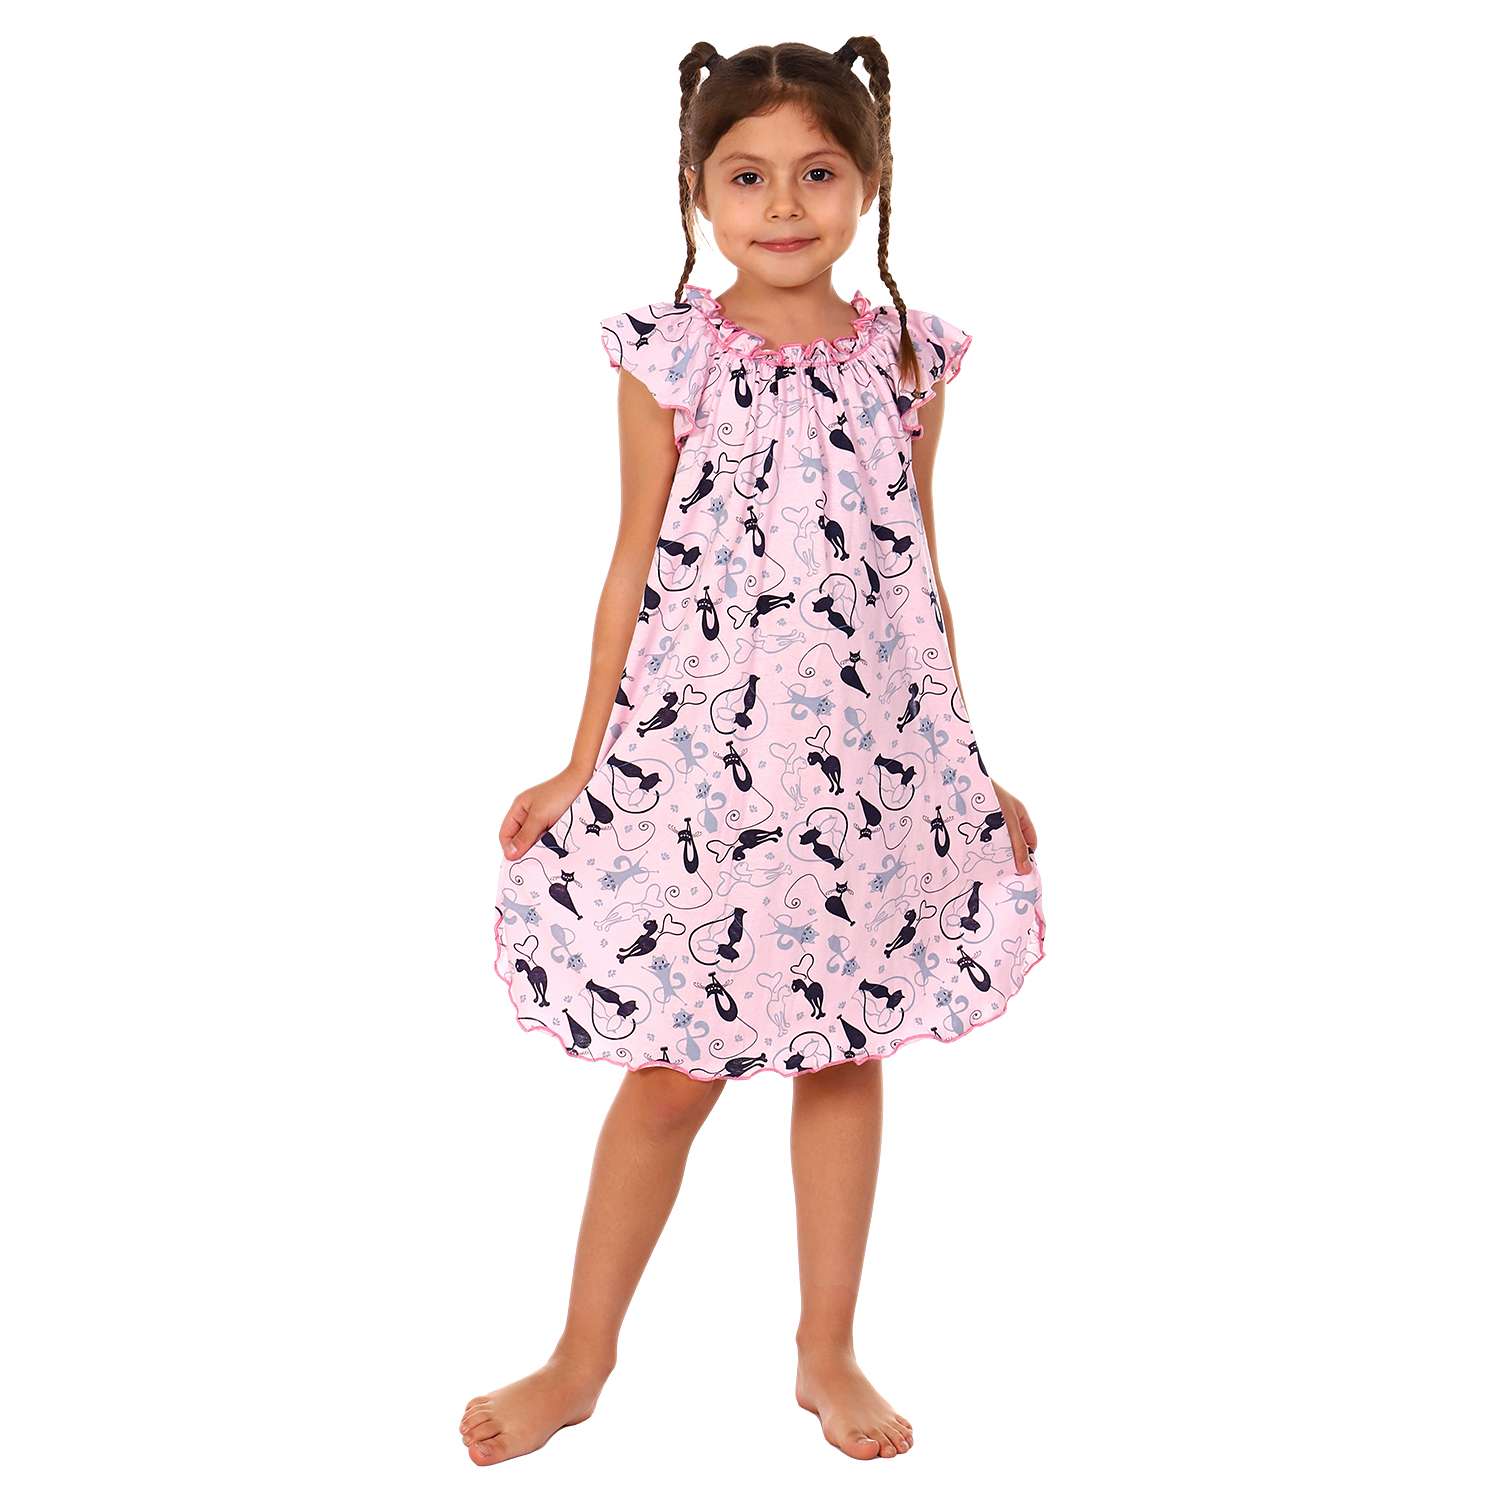 Сорочка ночная Детская Одежда 0003К/розовый - фото 1